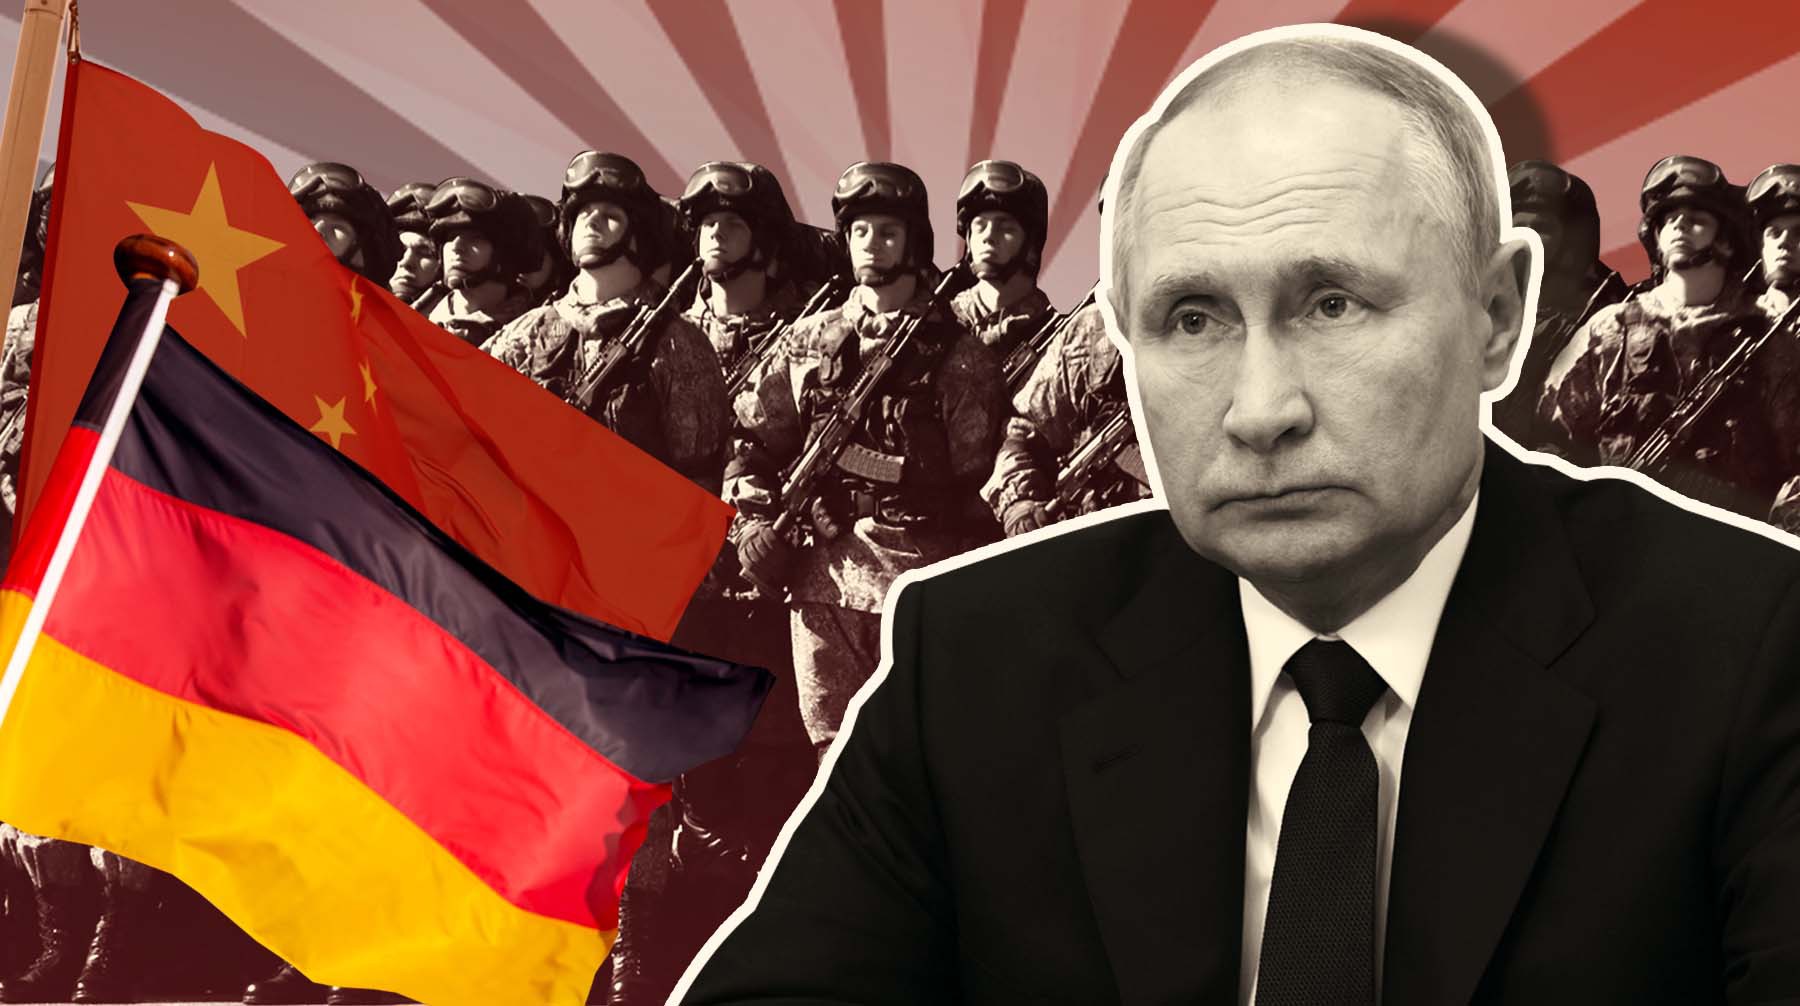 Dailystorm - Германия назвала частичную мобилизацию в РФ дальнейшей эскалацией, а Китай призвал к урегулированию конфликта